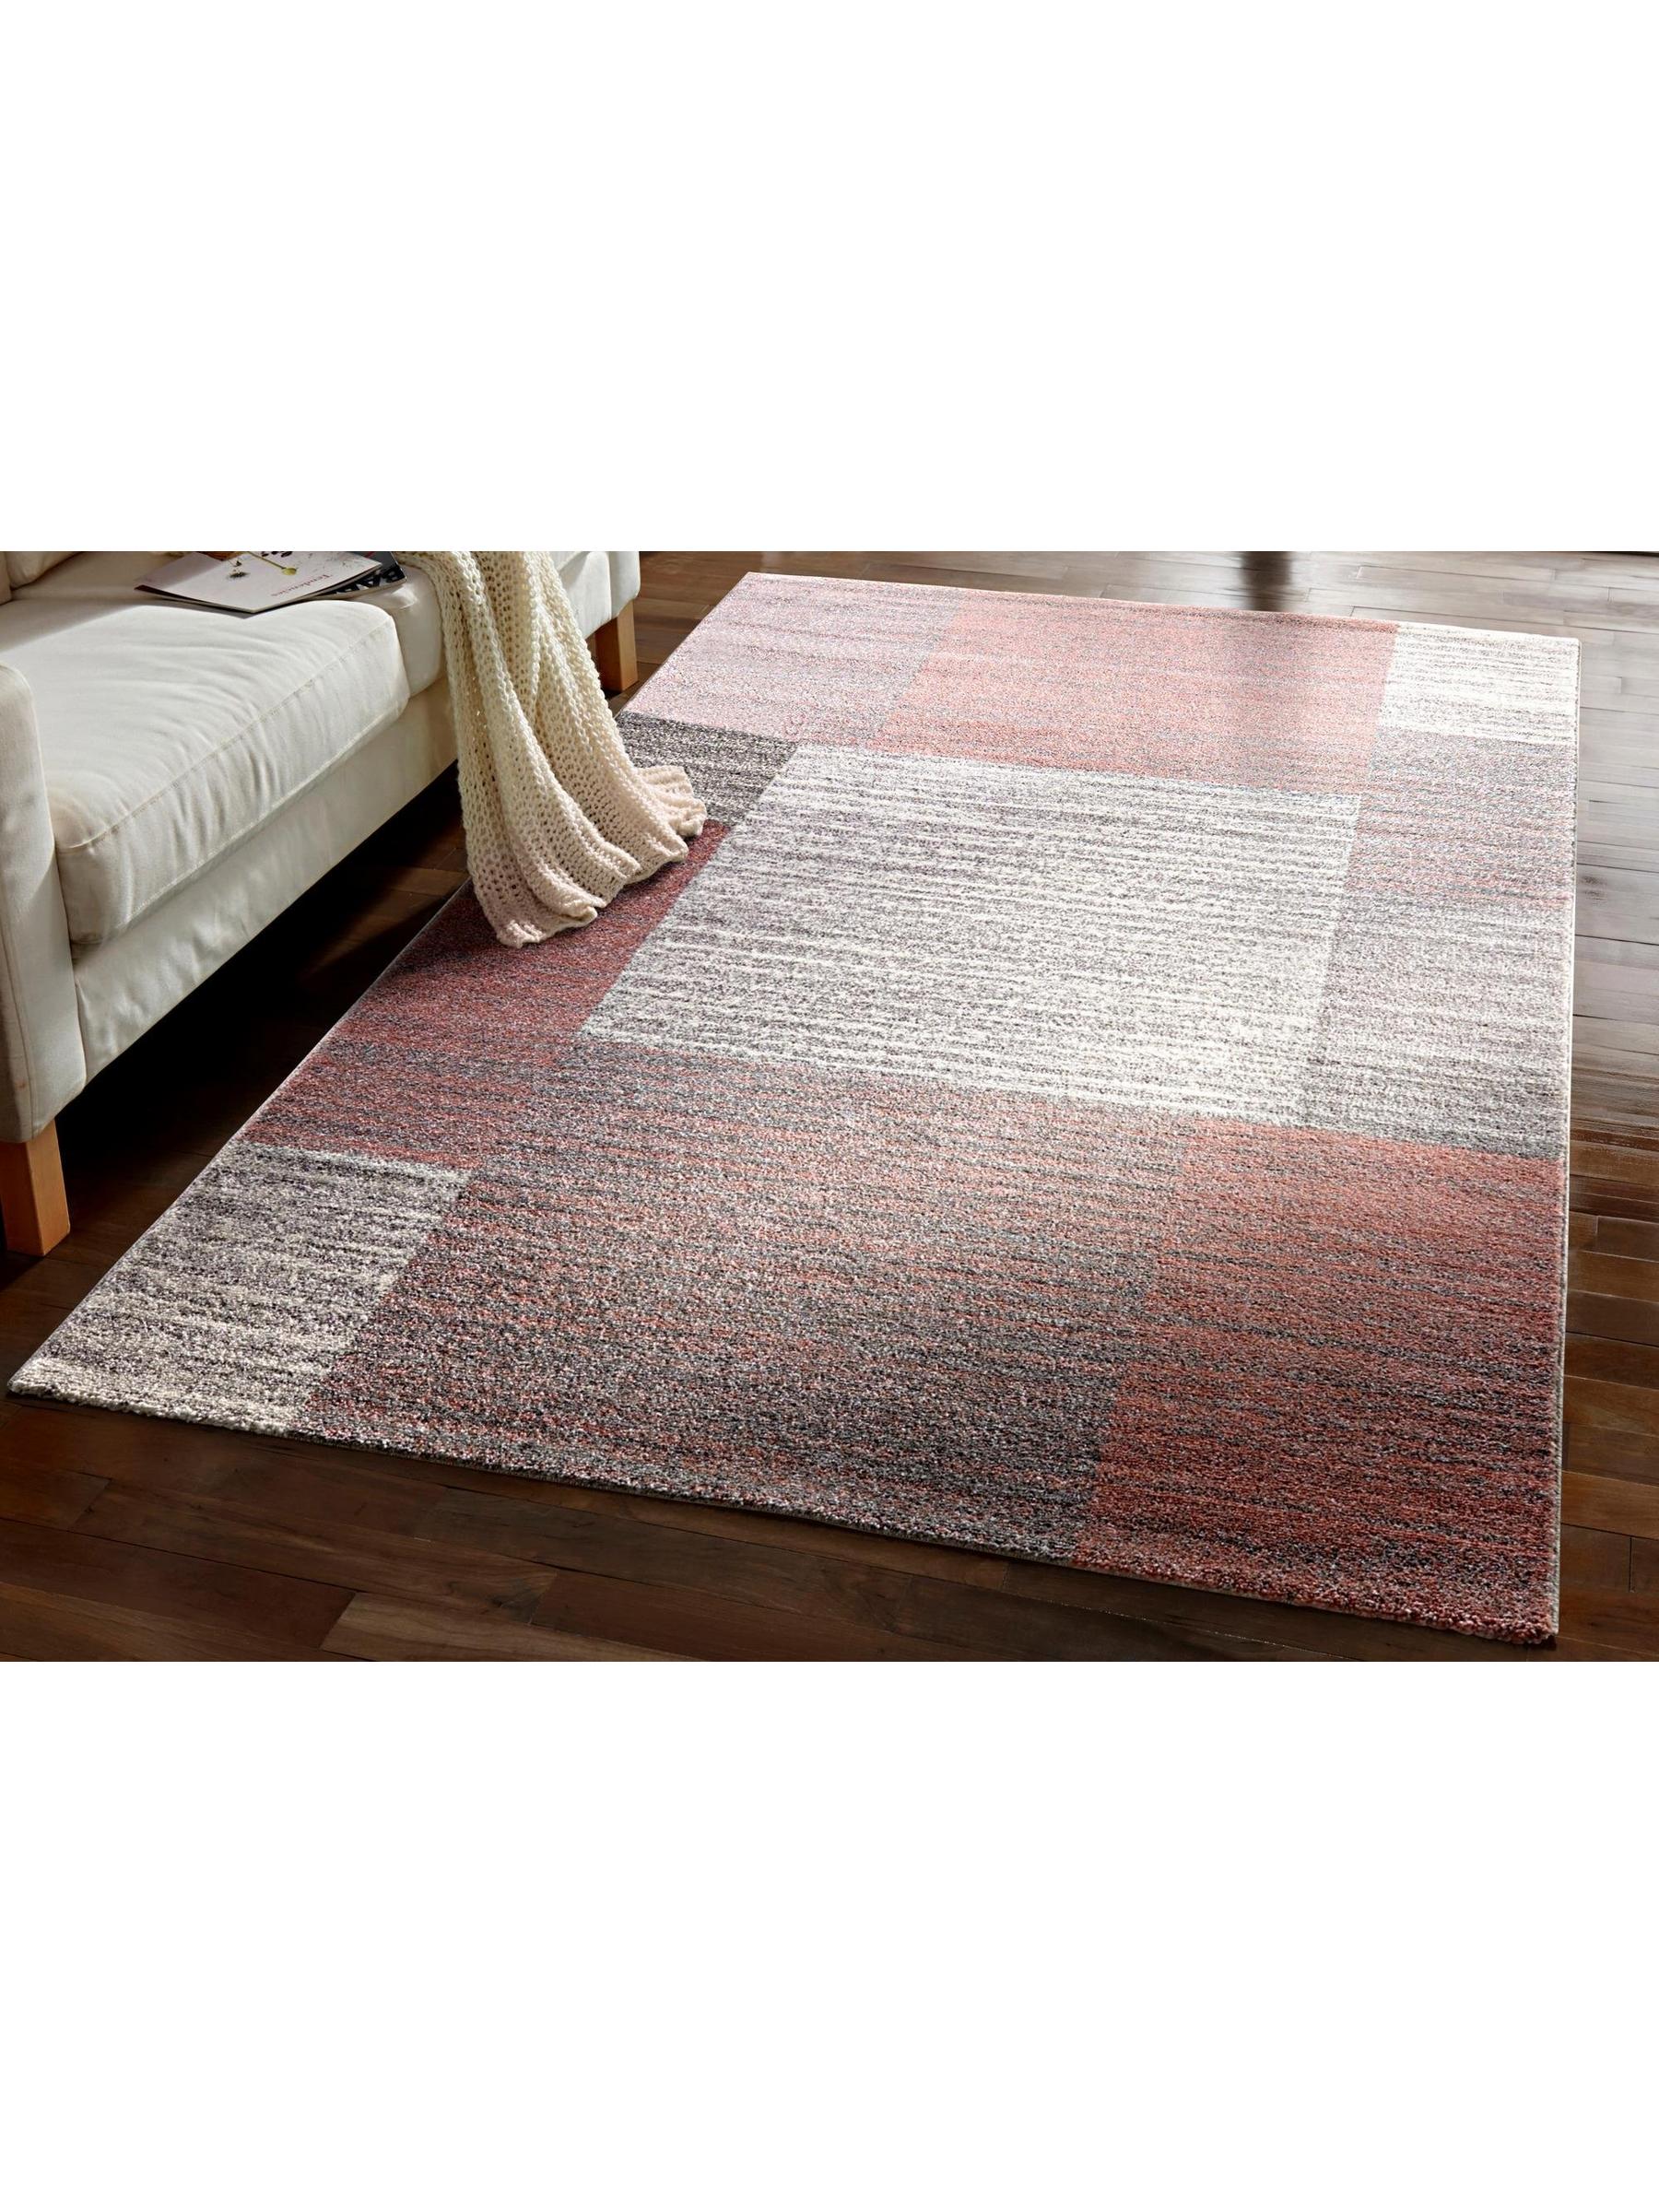 Teppich in Pastellfarben 120x170cm